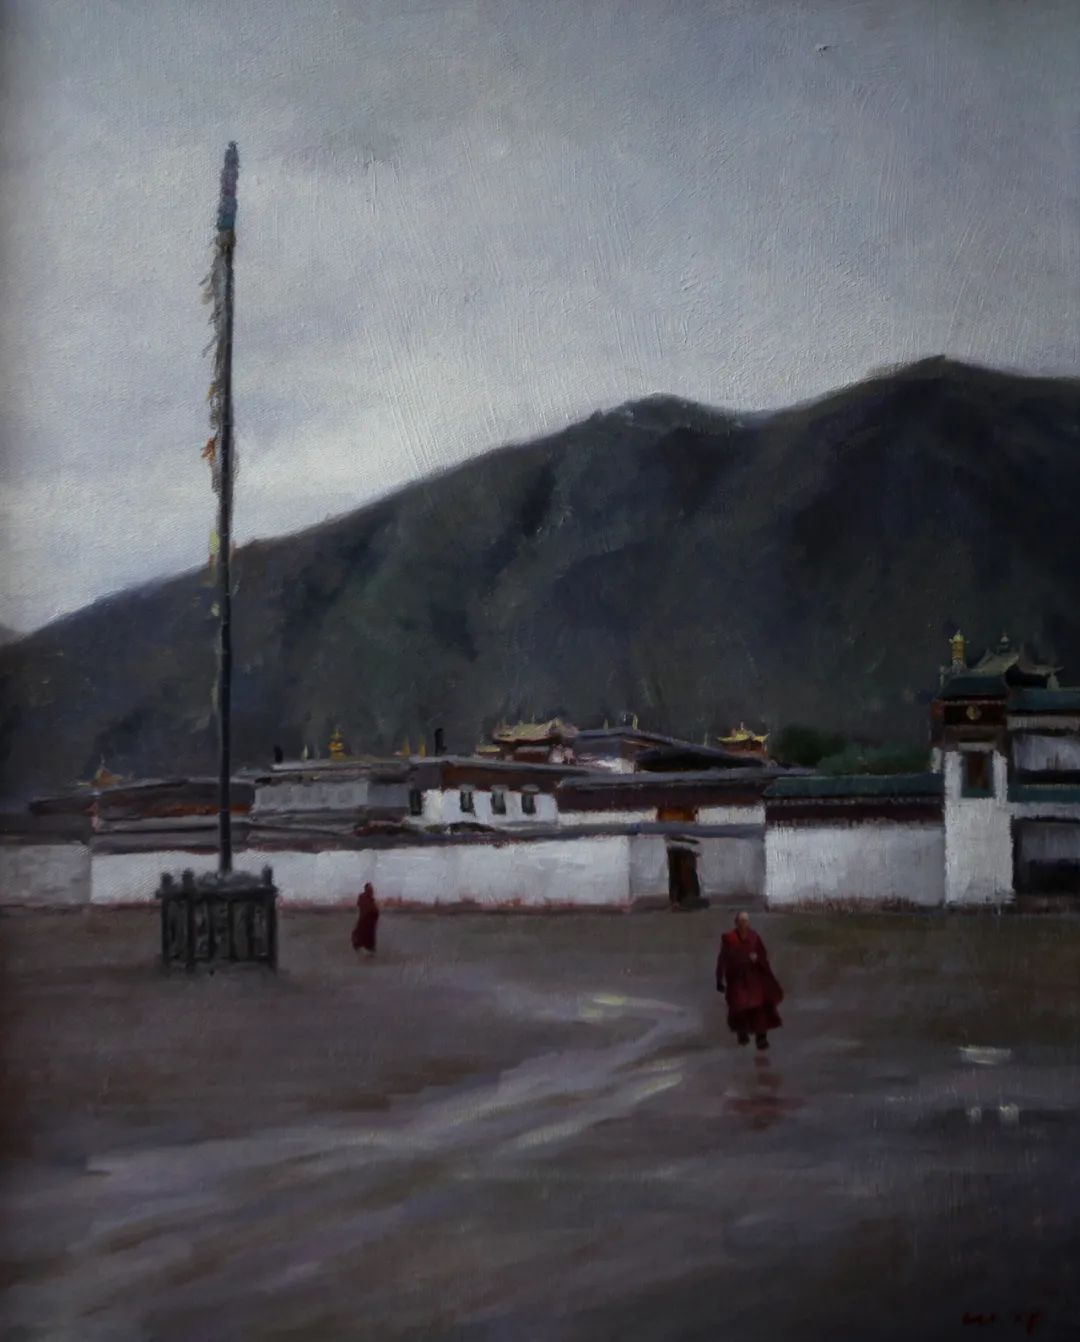 喧嚣中的沉静——著名画家王雪峰笔下质朴、平和的美